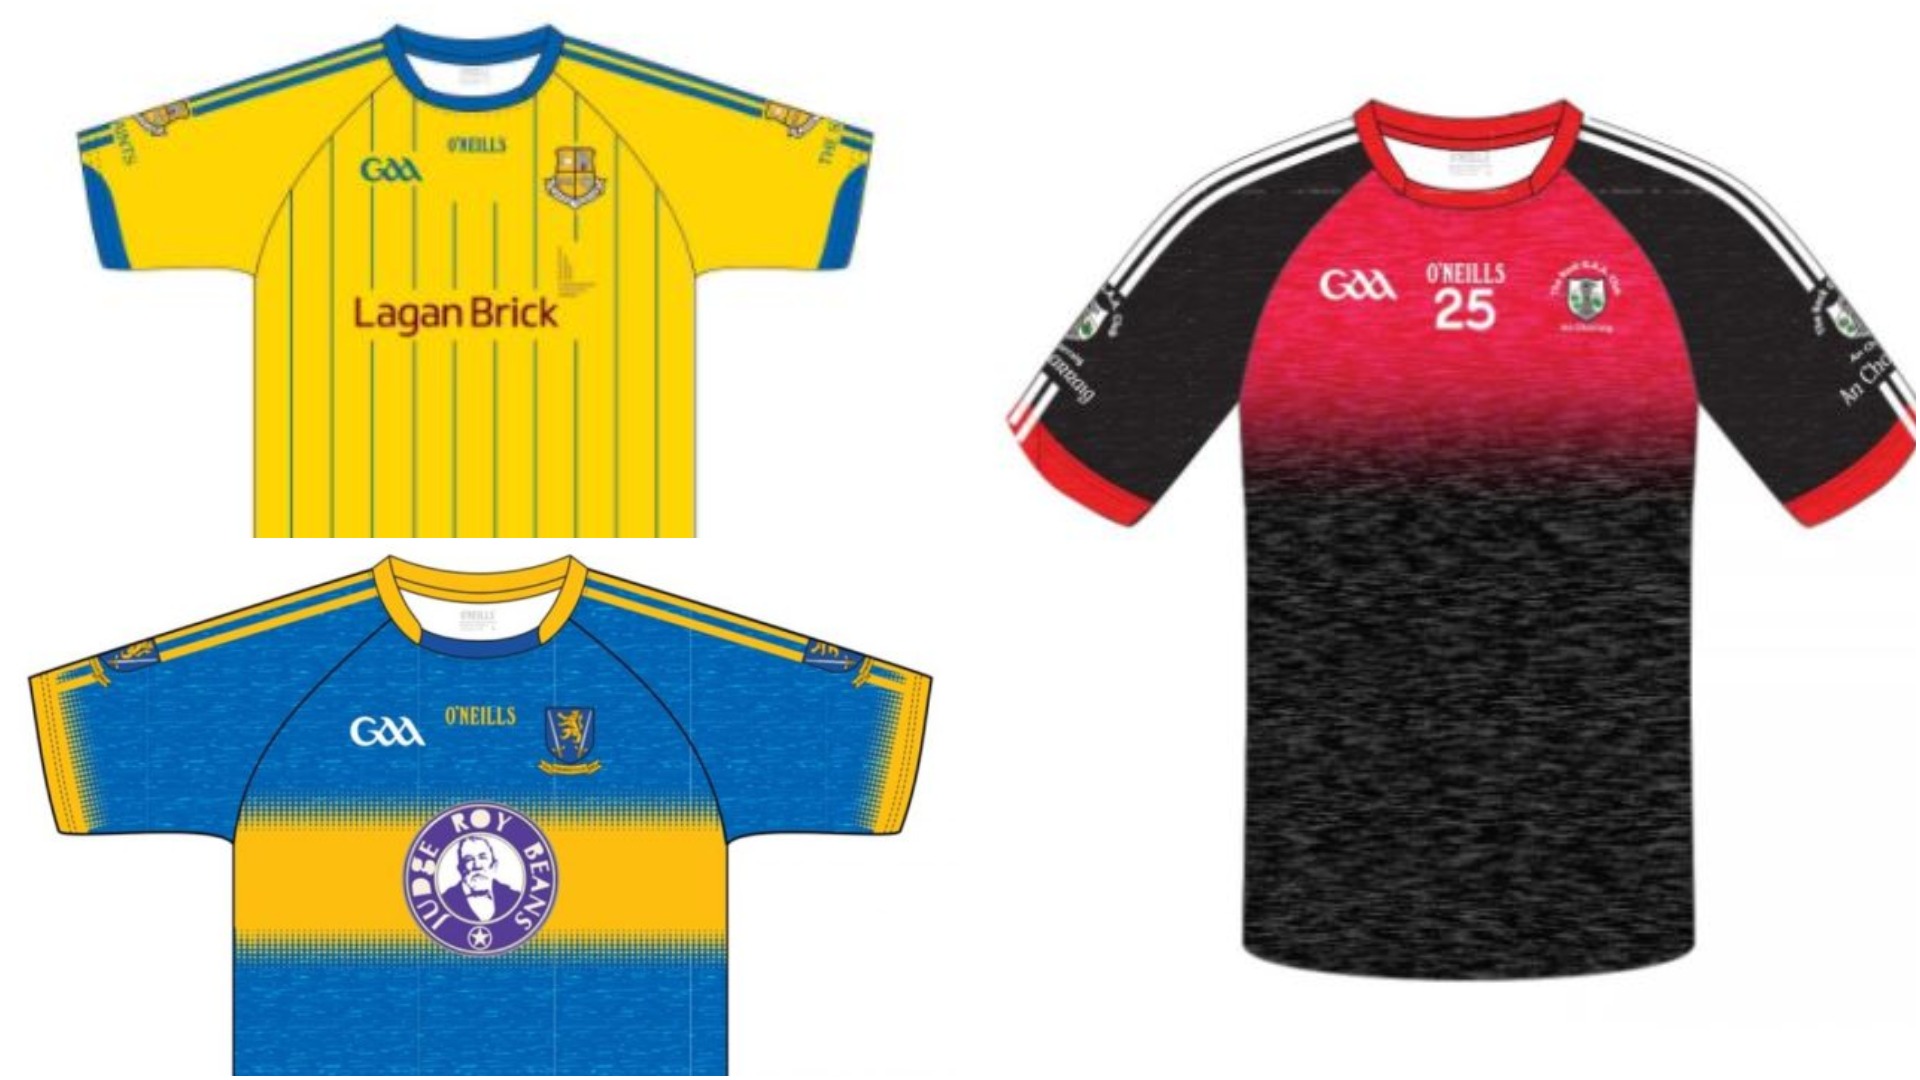 GAA club jerseys in Laois 